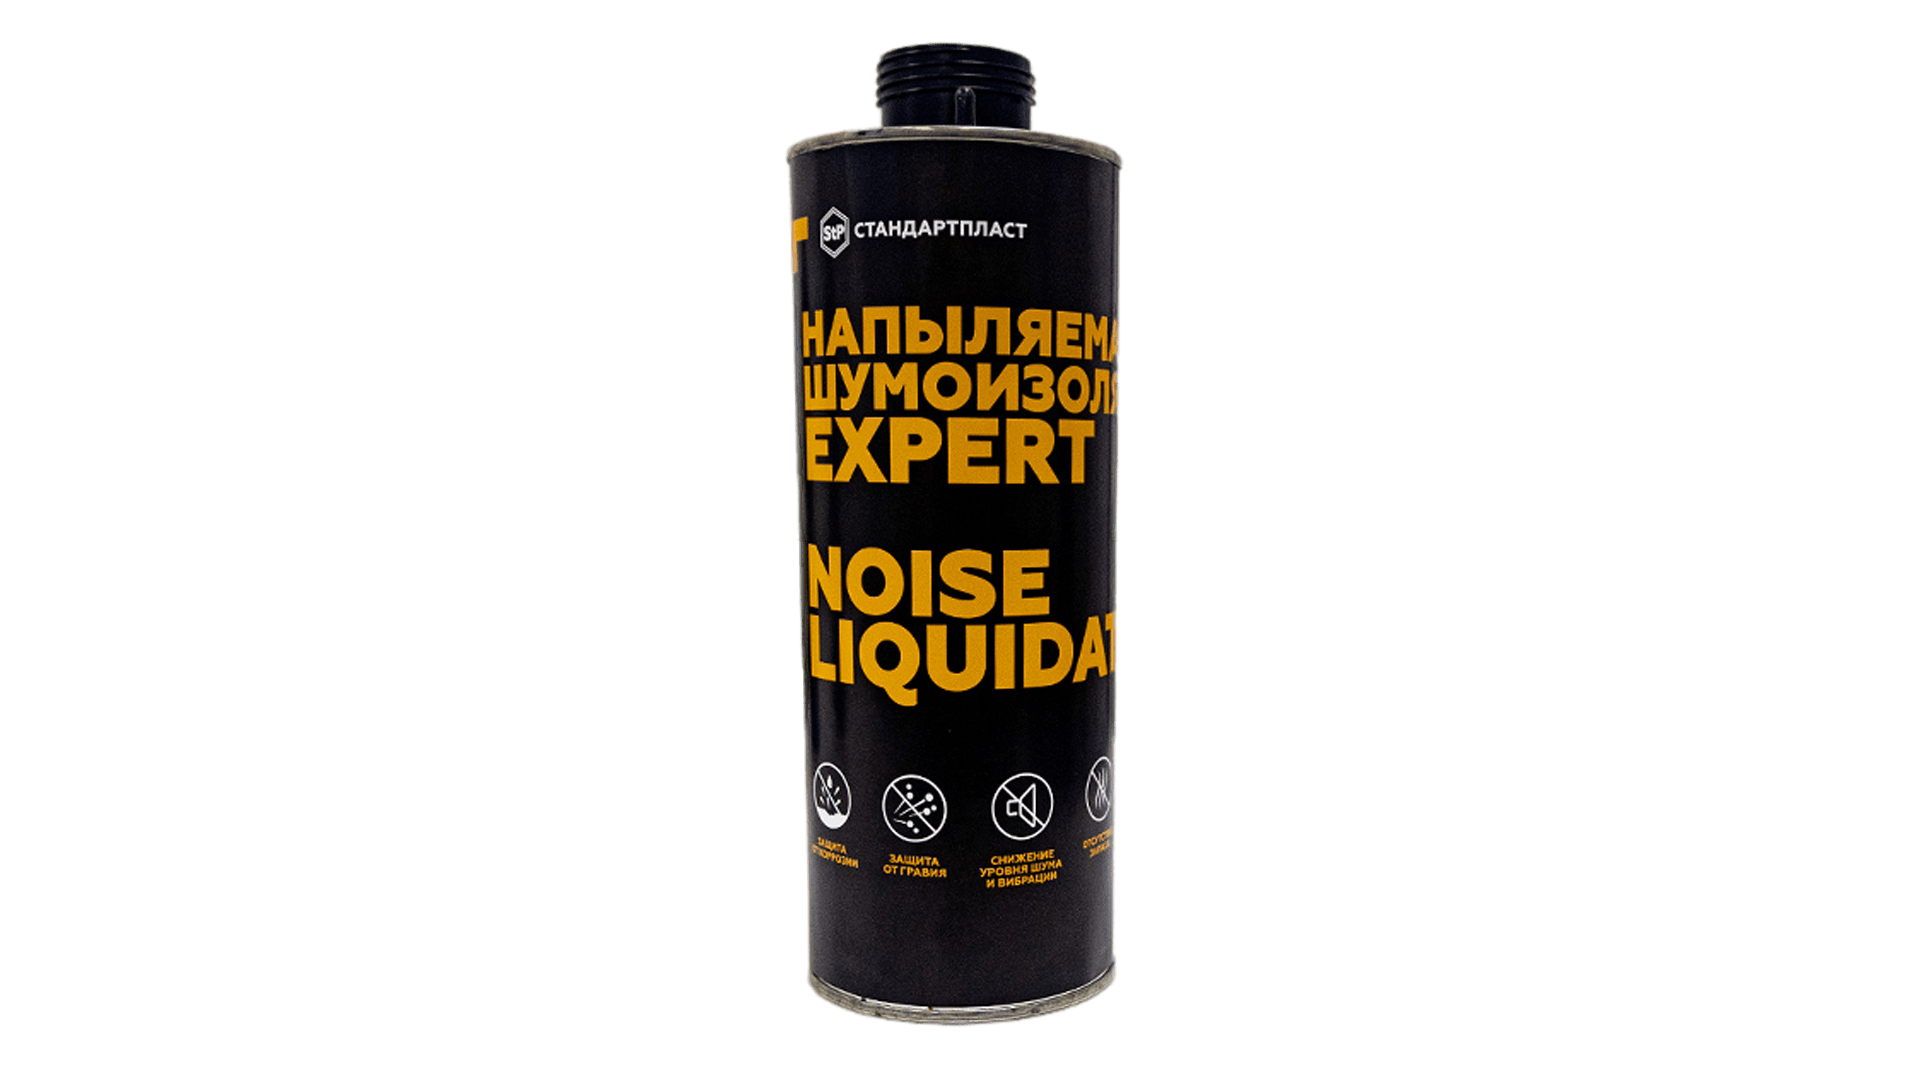 Напыляемая шумоизоляция  STP NoiseLIQUIDator Expert 1л